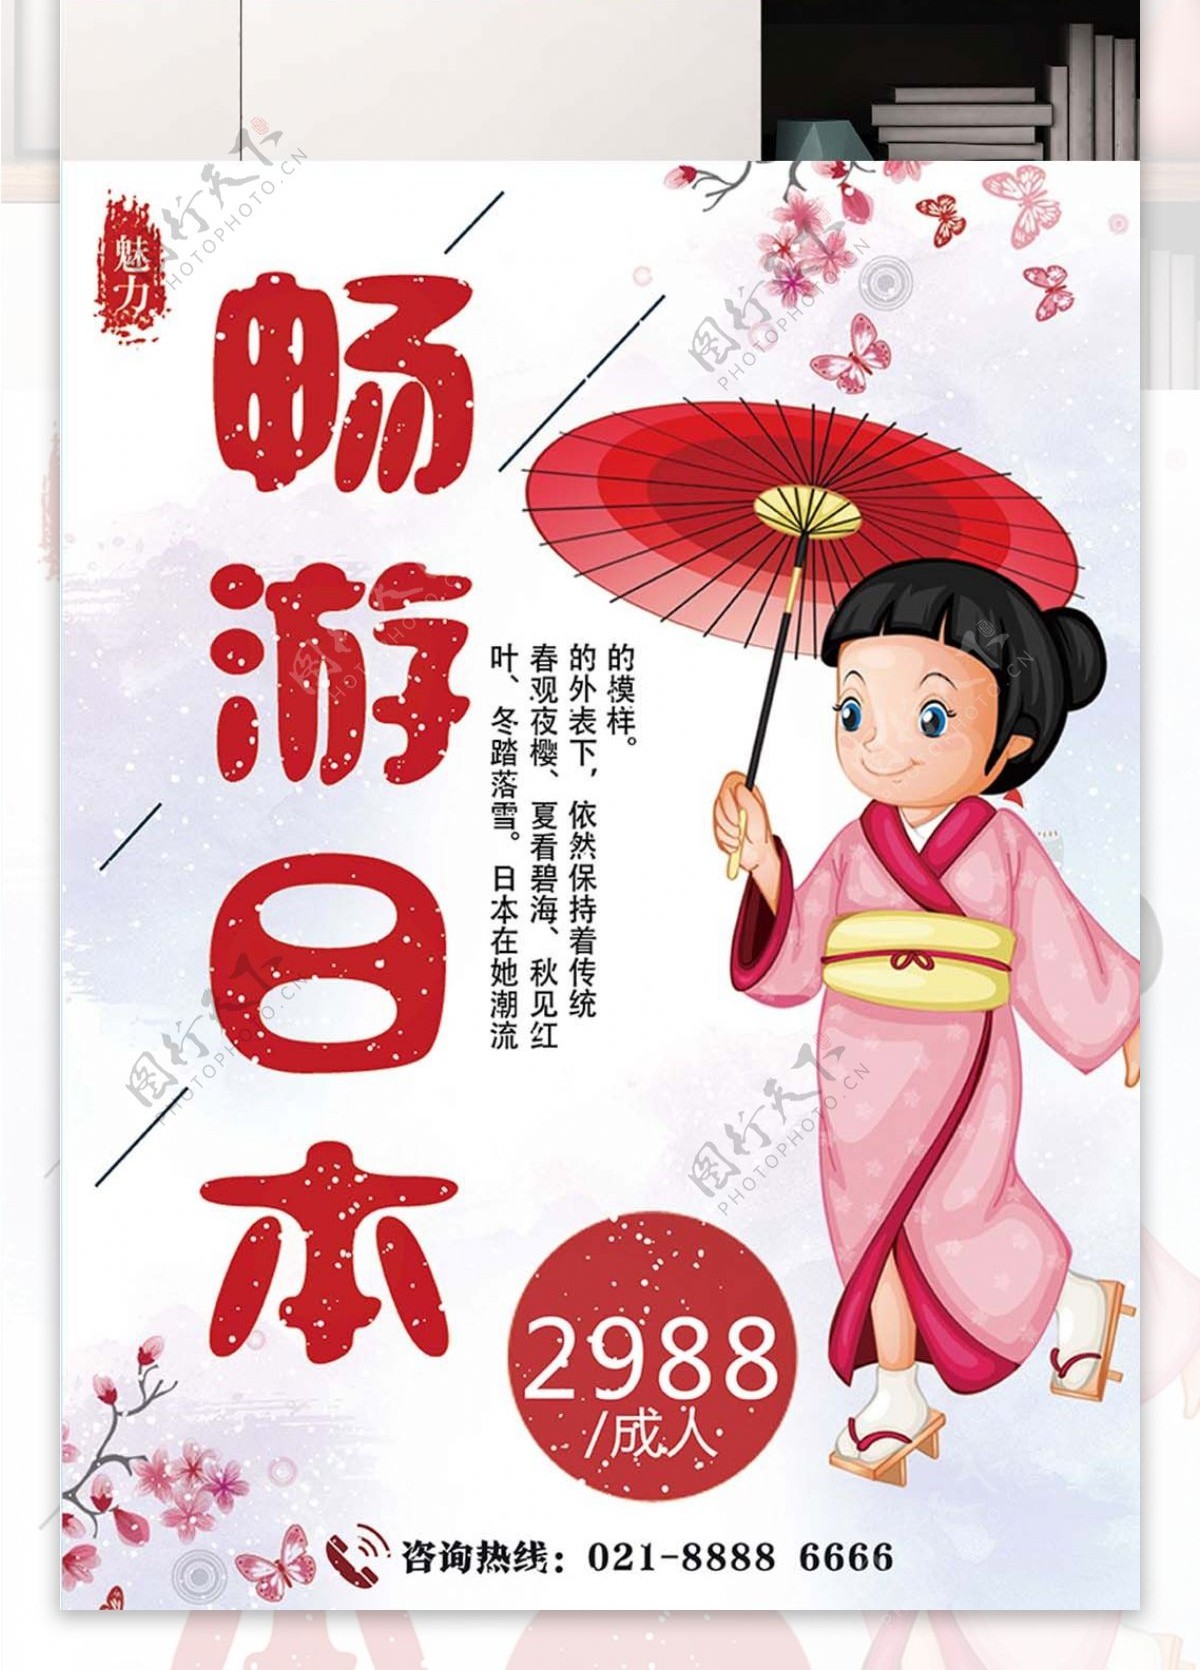 粉色背景浪漫日本旅游宣传海报